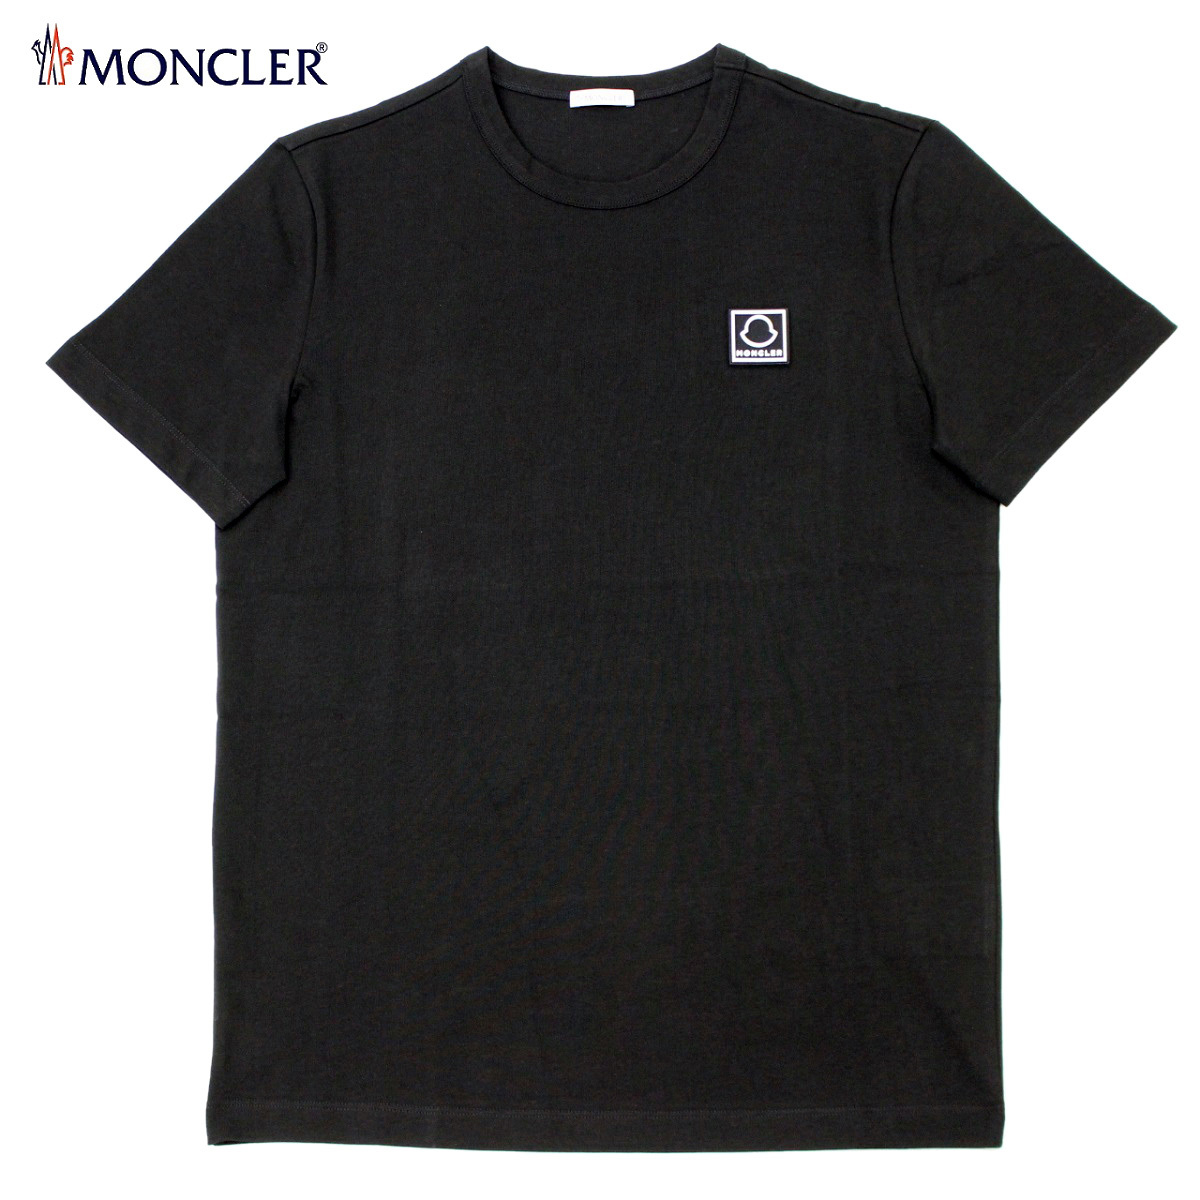 送料無料 171 MONCLER モンクレール 8C00043 8390T ブラック クルーネック 半袖 Tシャツ size S